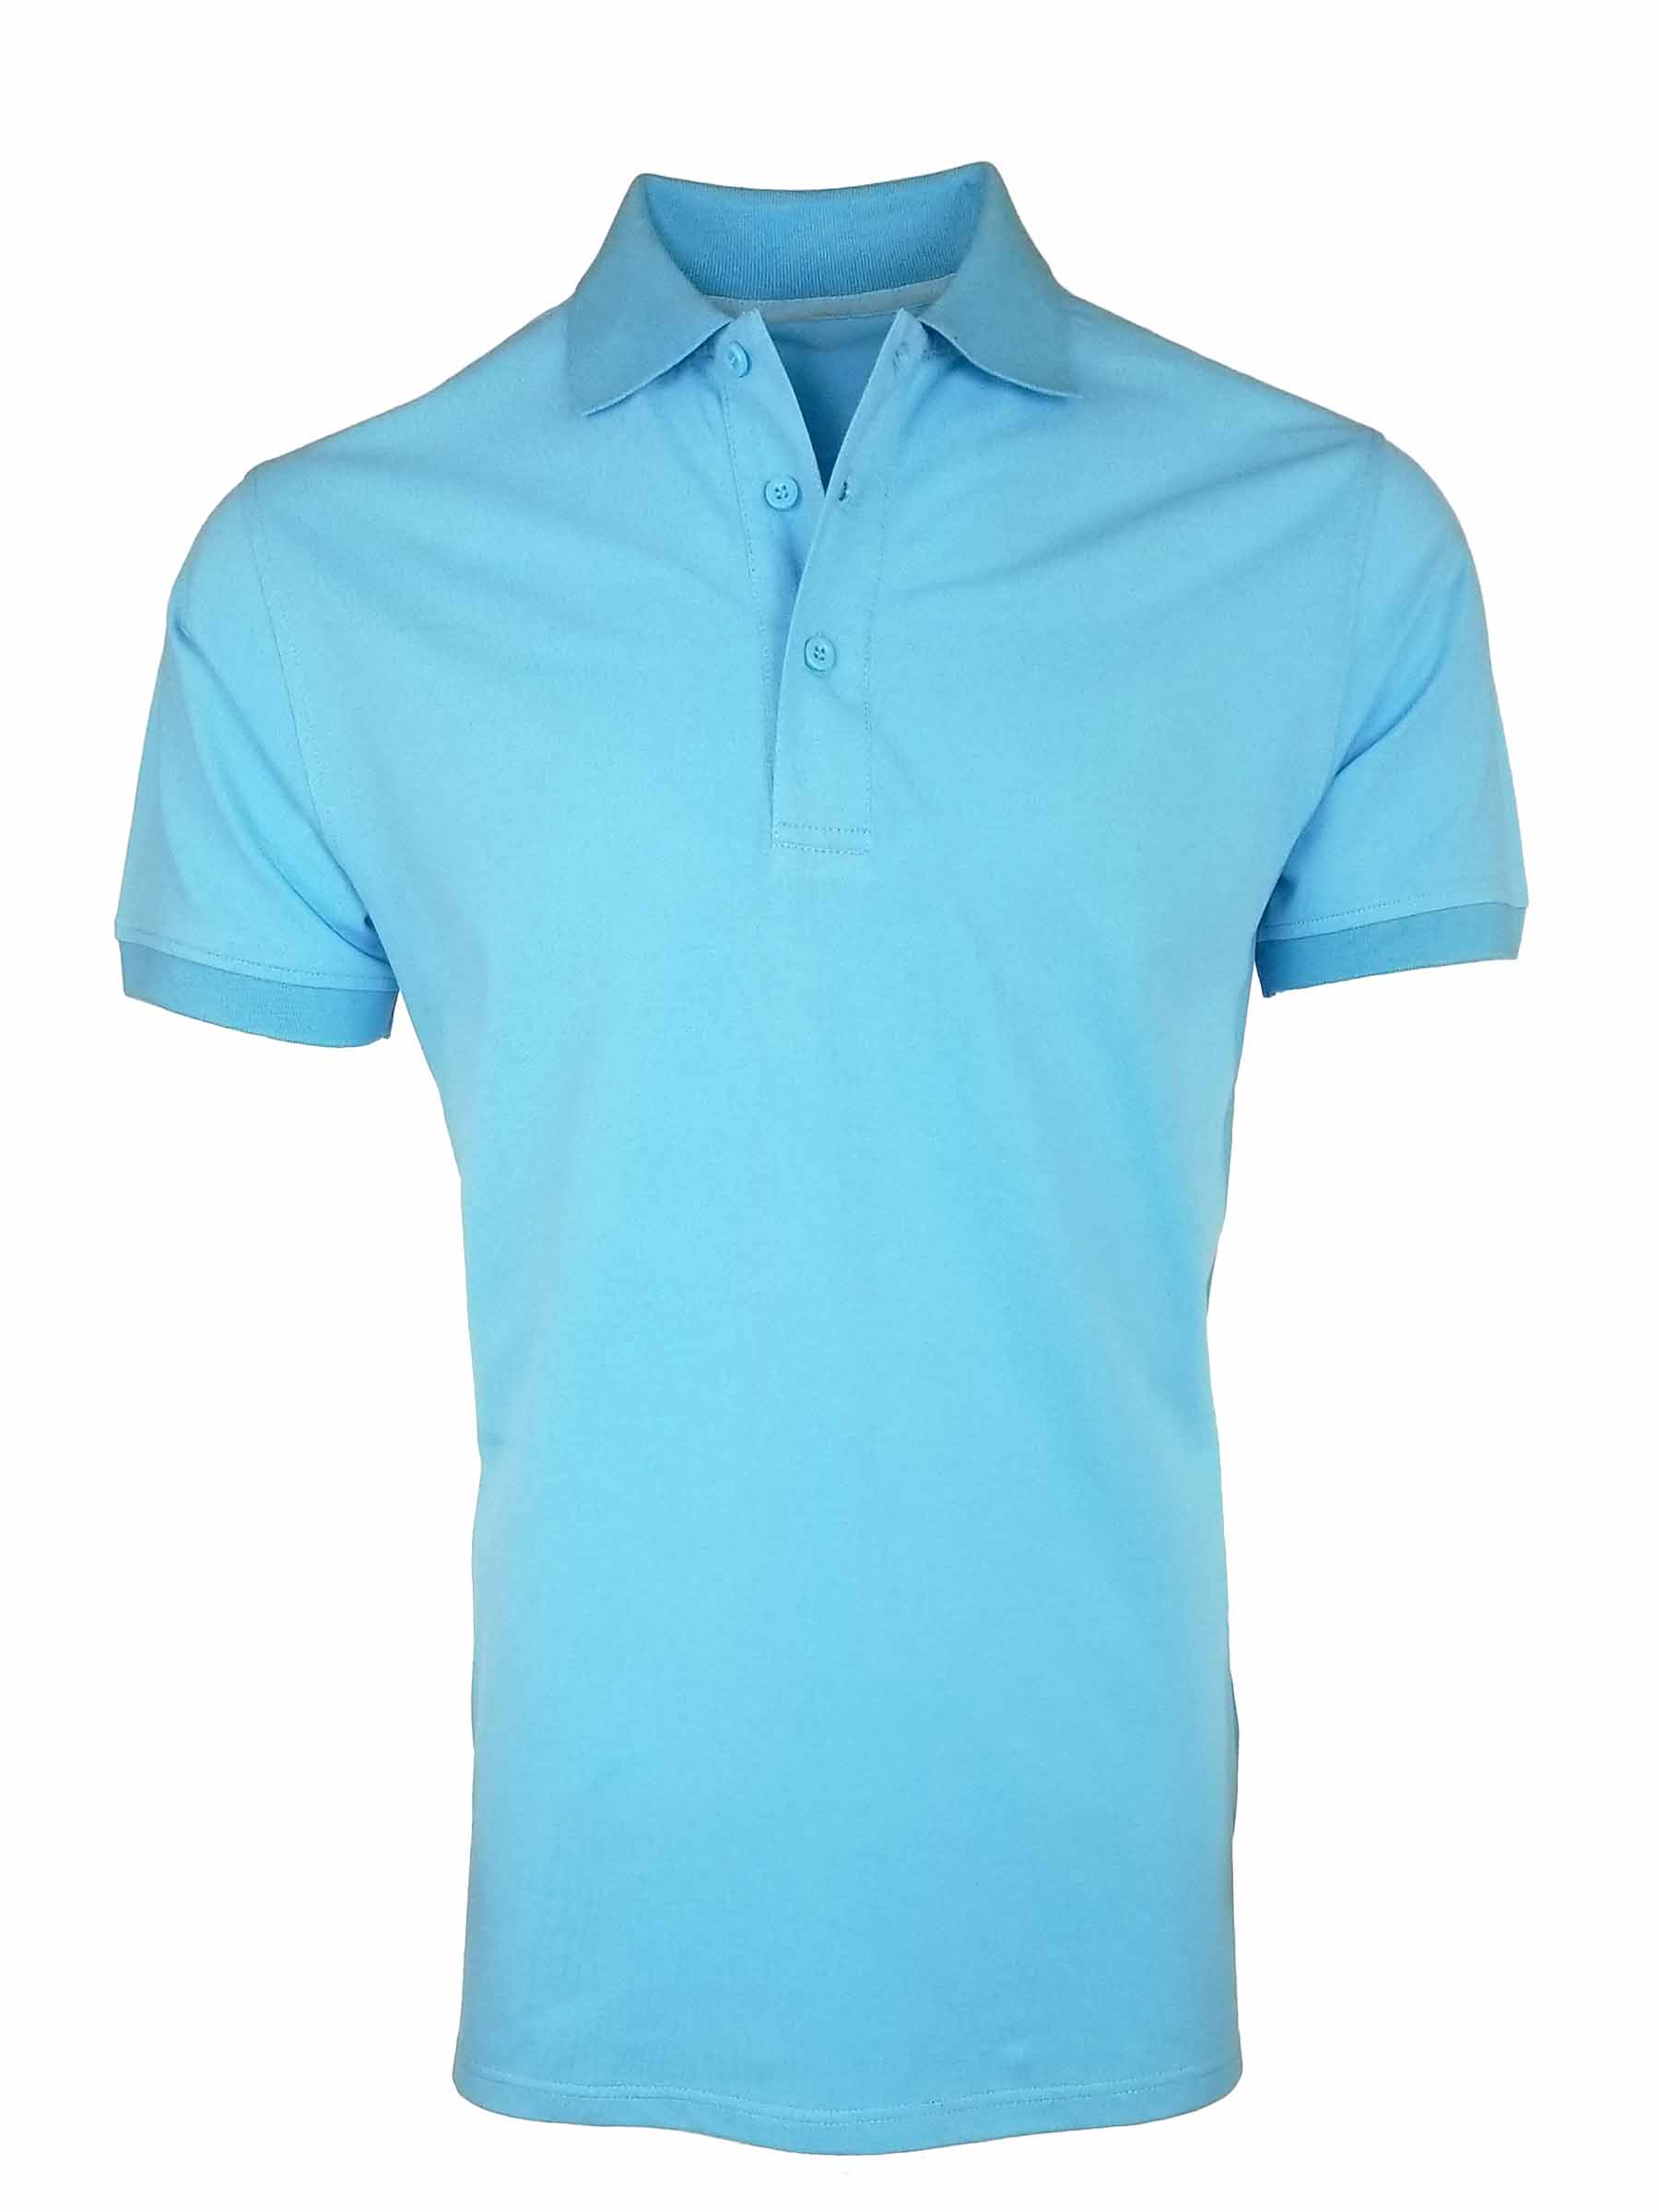 Men's All Occasion Pique Polo - Powder Blue - Uniform Edit